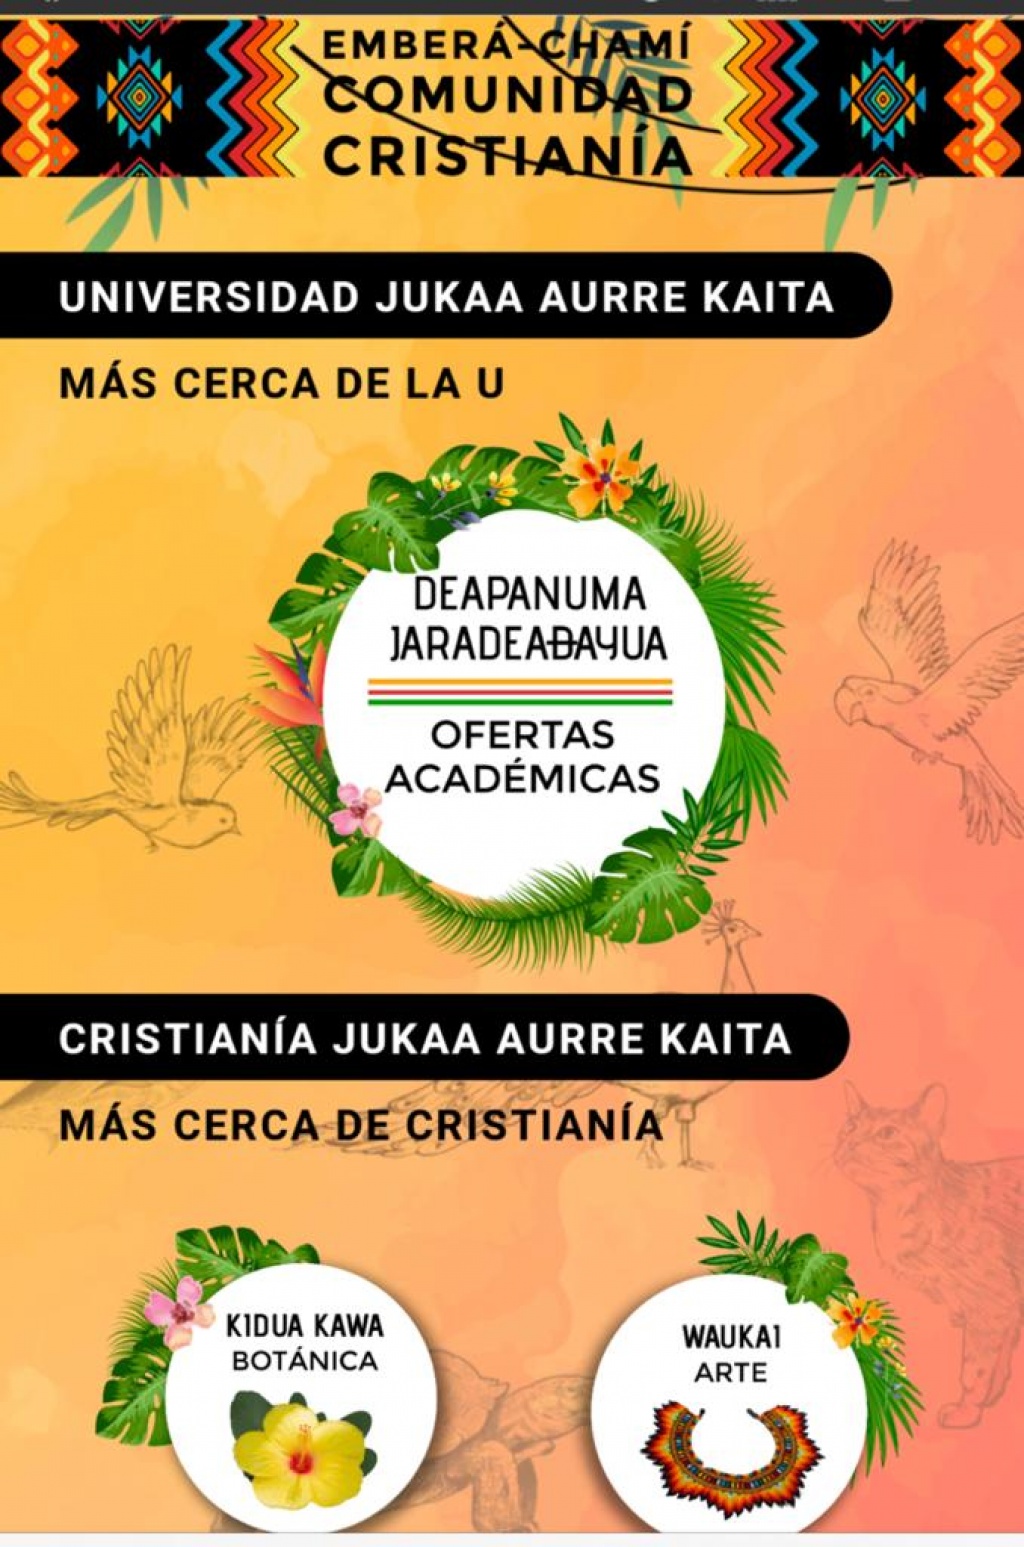 La Gobernación de Antioquia presenta una aplicación móvil para facilitar el paso a la educación superior de estudiantes Emberá Chamí